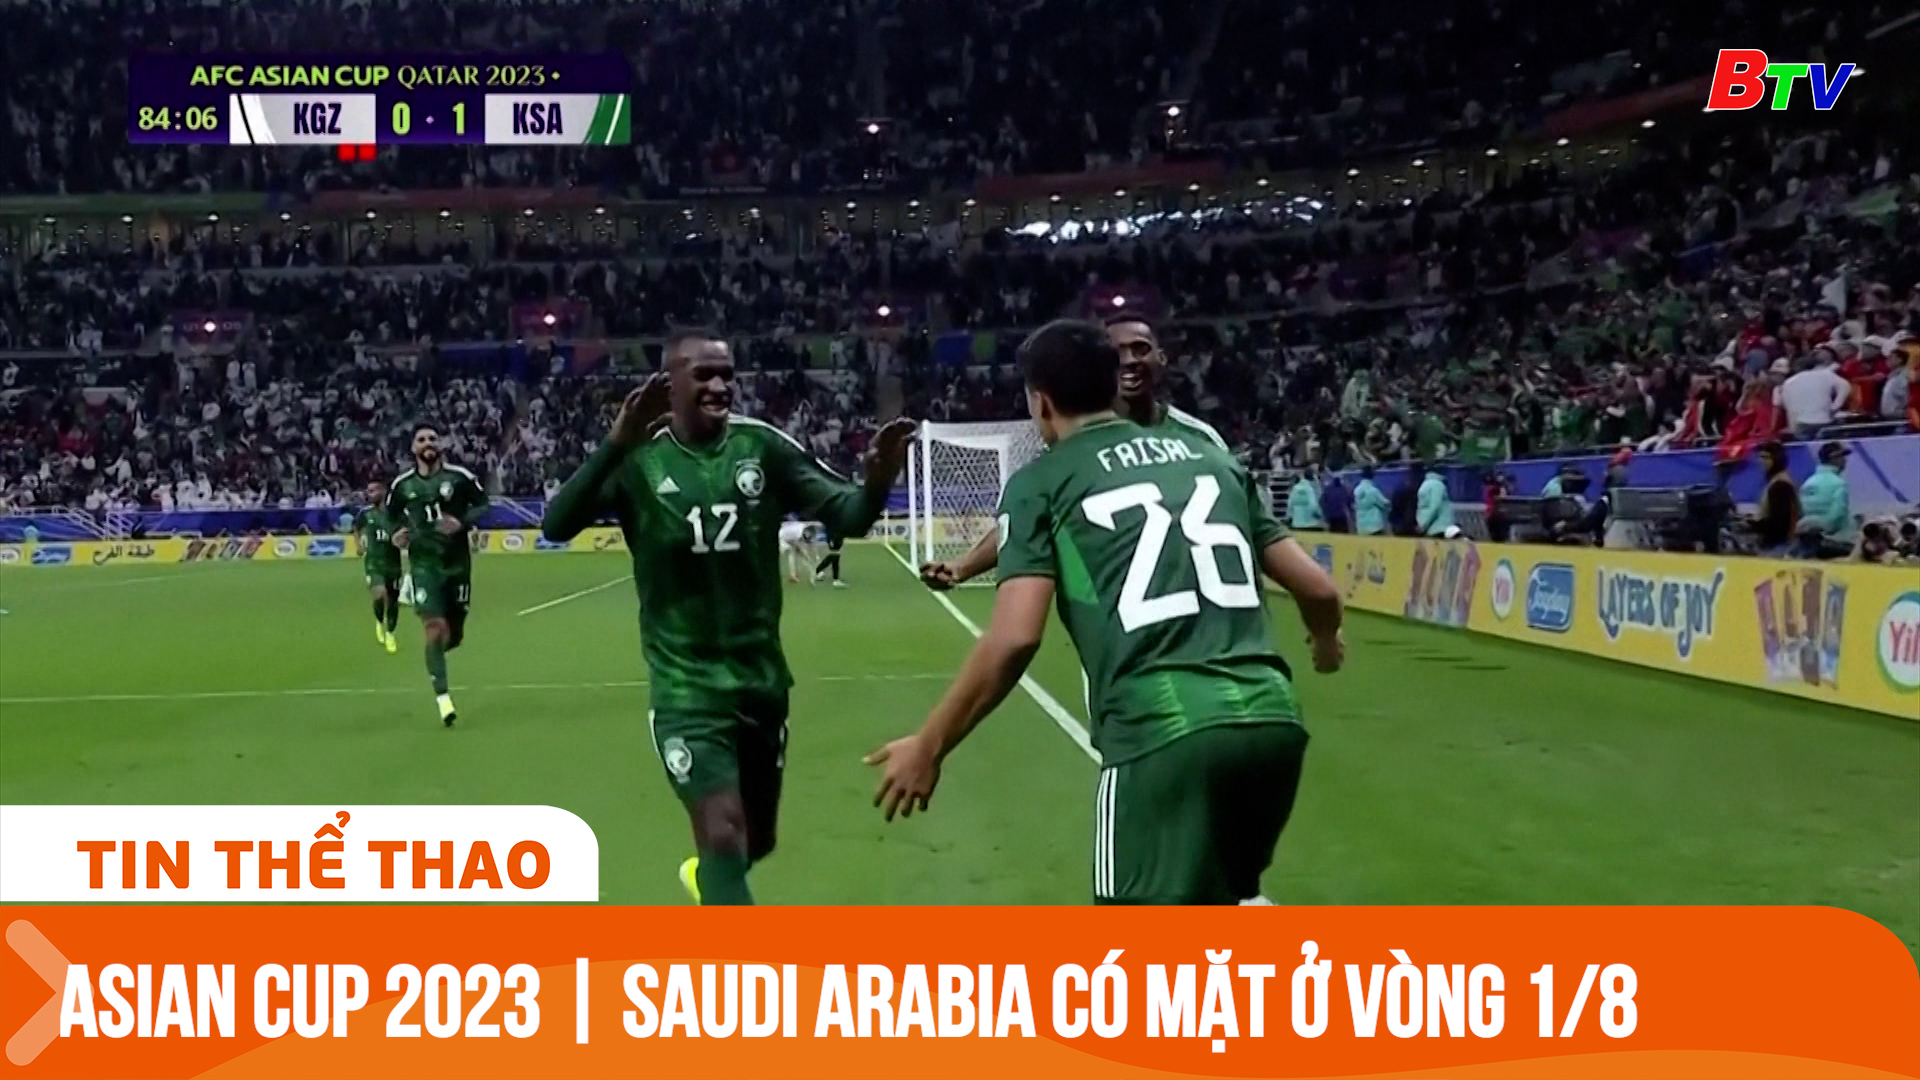 Asian Cup 2023 | Saudi Arabia chính thức có mặt ở vòng 1/8 | Tin Thể thao 24h	